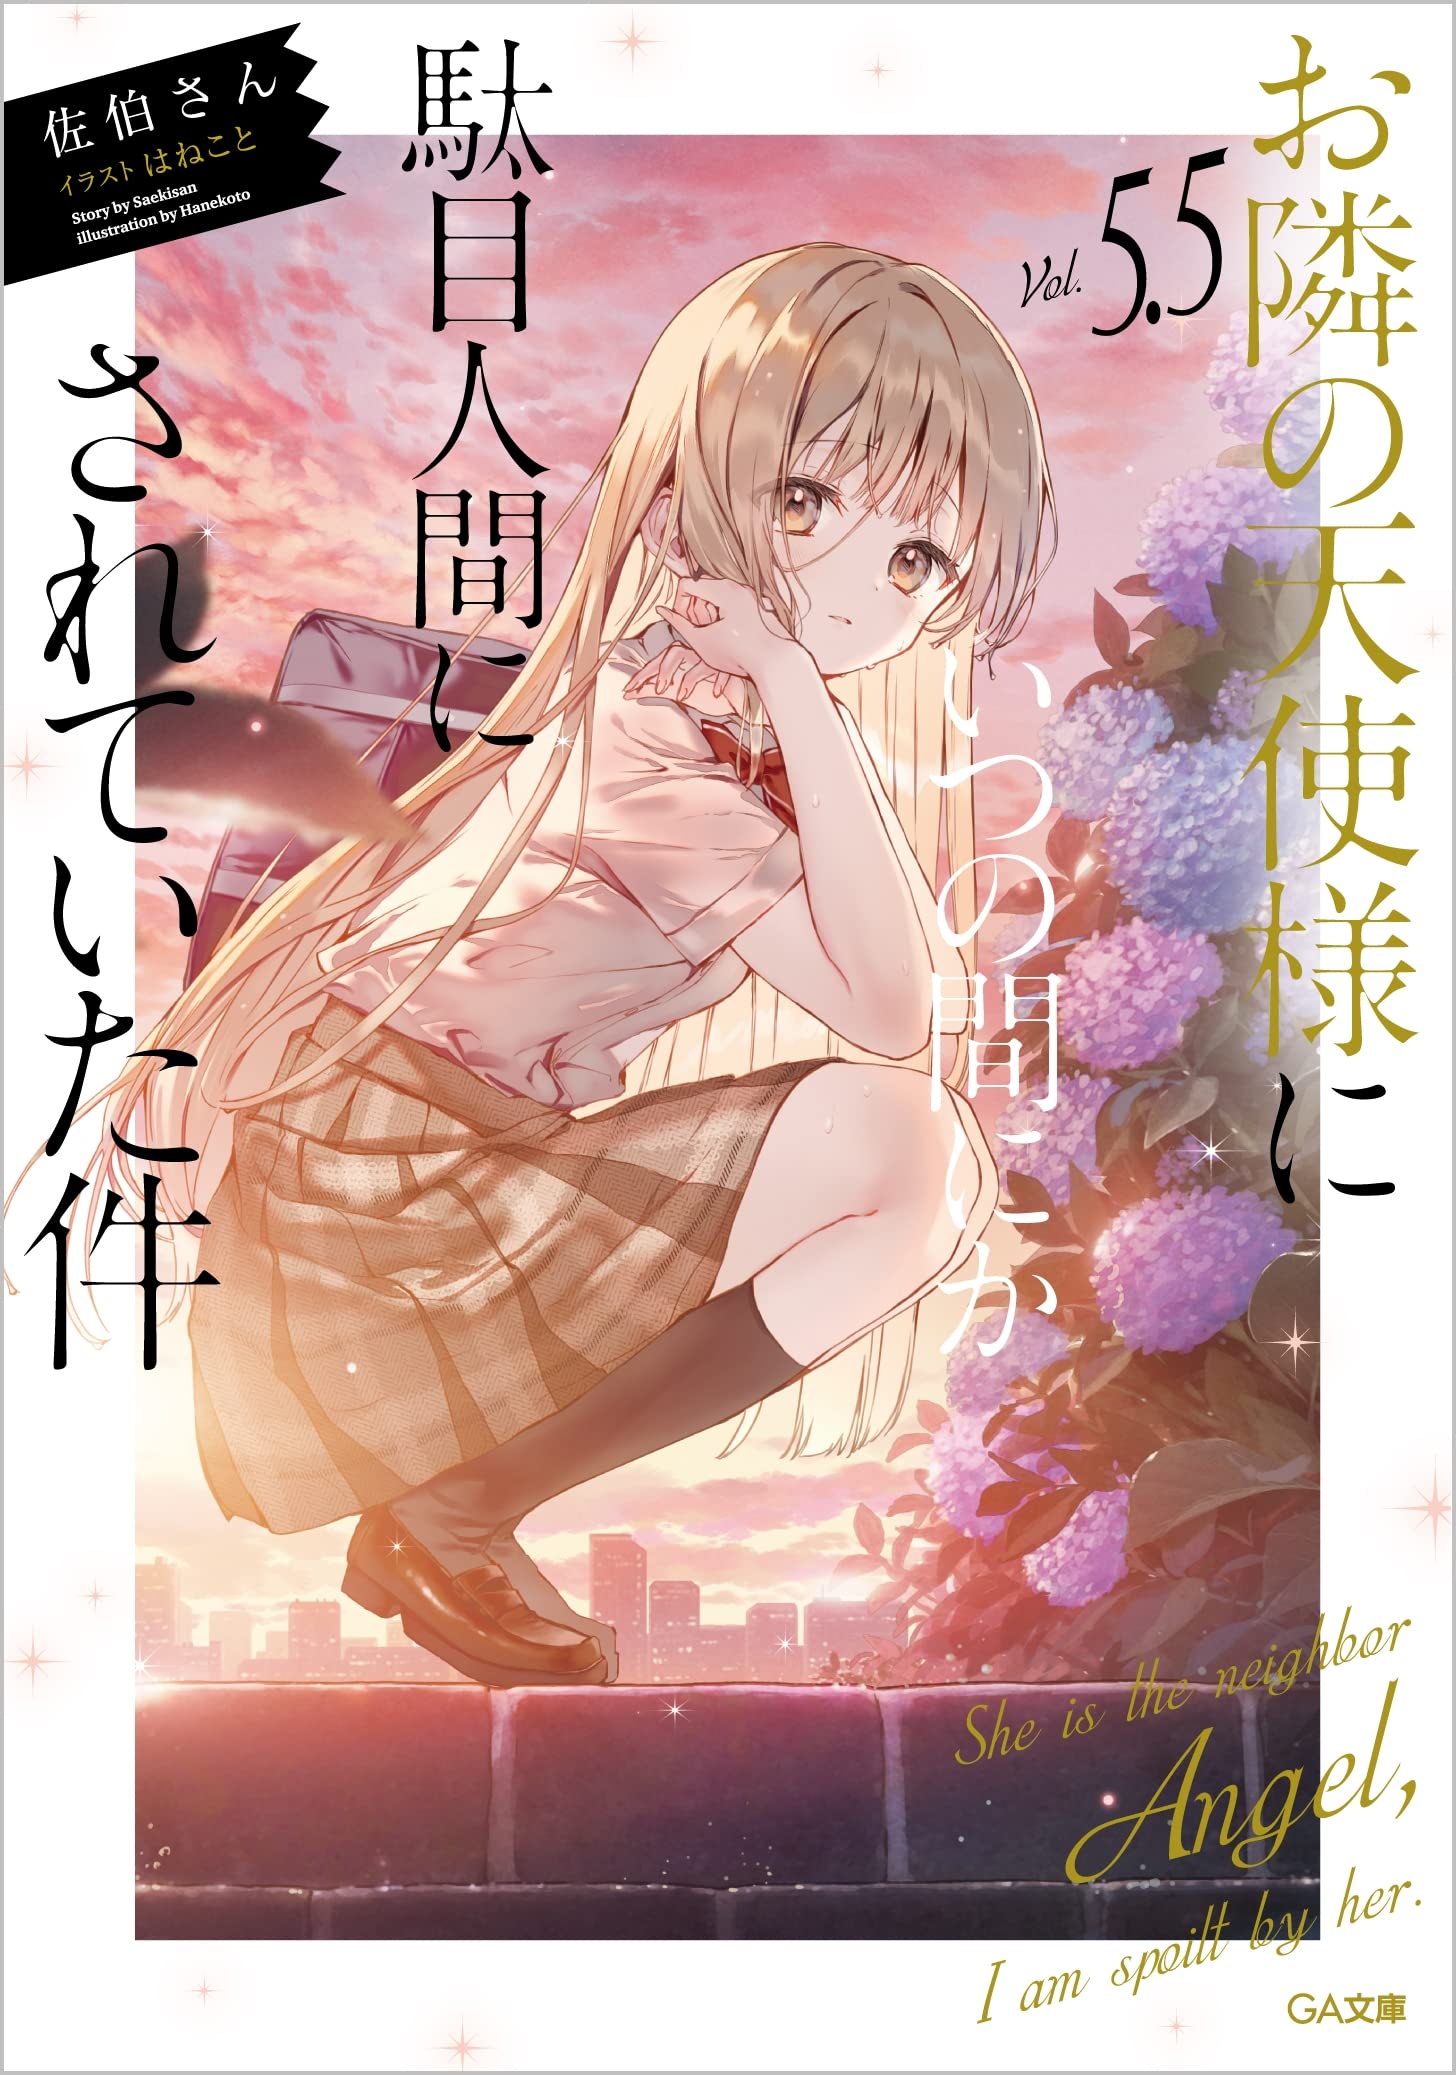 Mangá Satsuriku no Tenshi termina no 12º volume